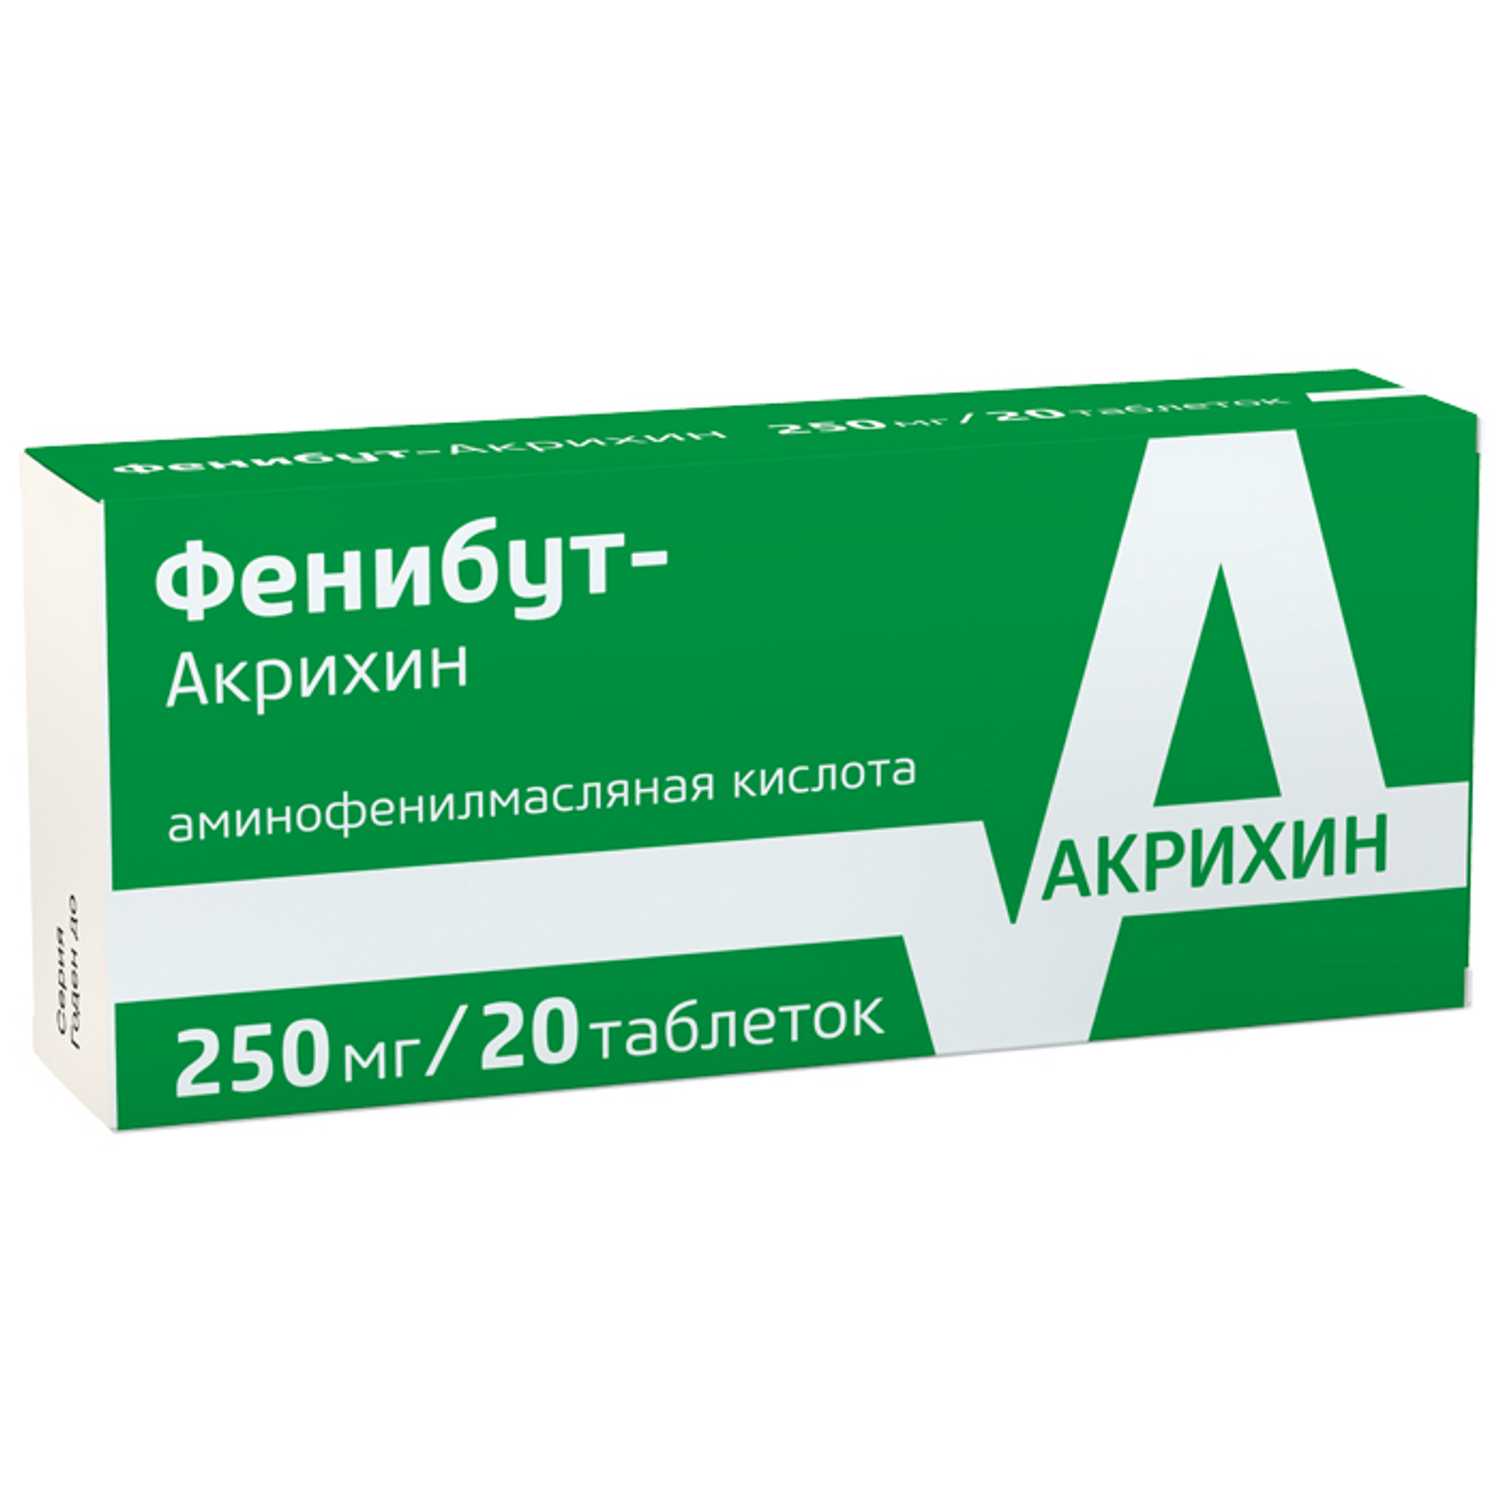 Купить Фенибут-акрихин таб 250мг 20 шт (аминофенилмасляная кислота) по .